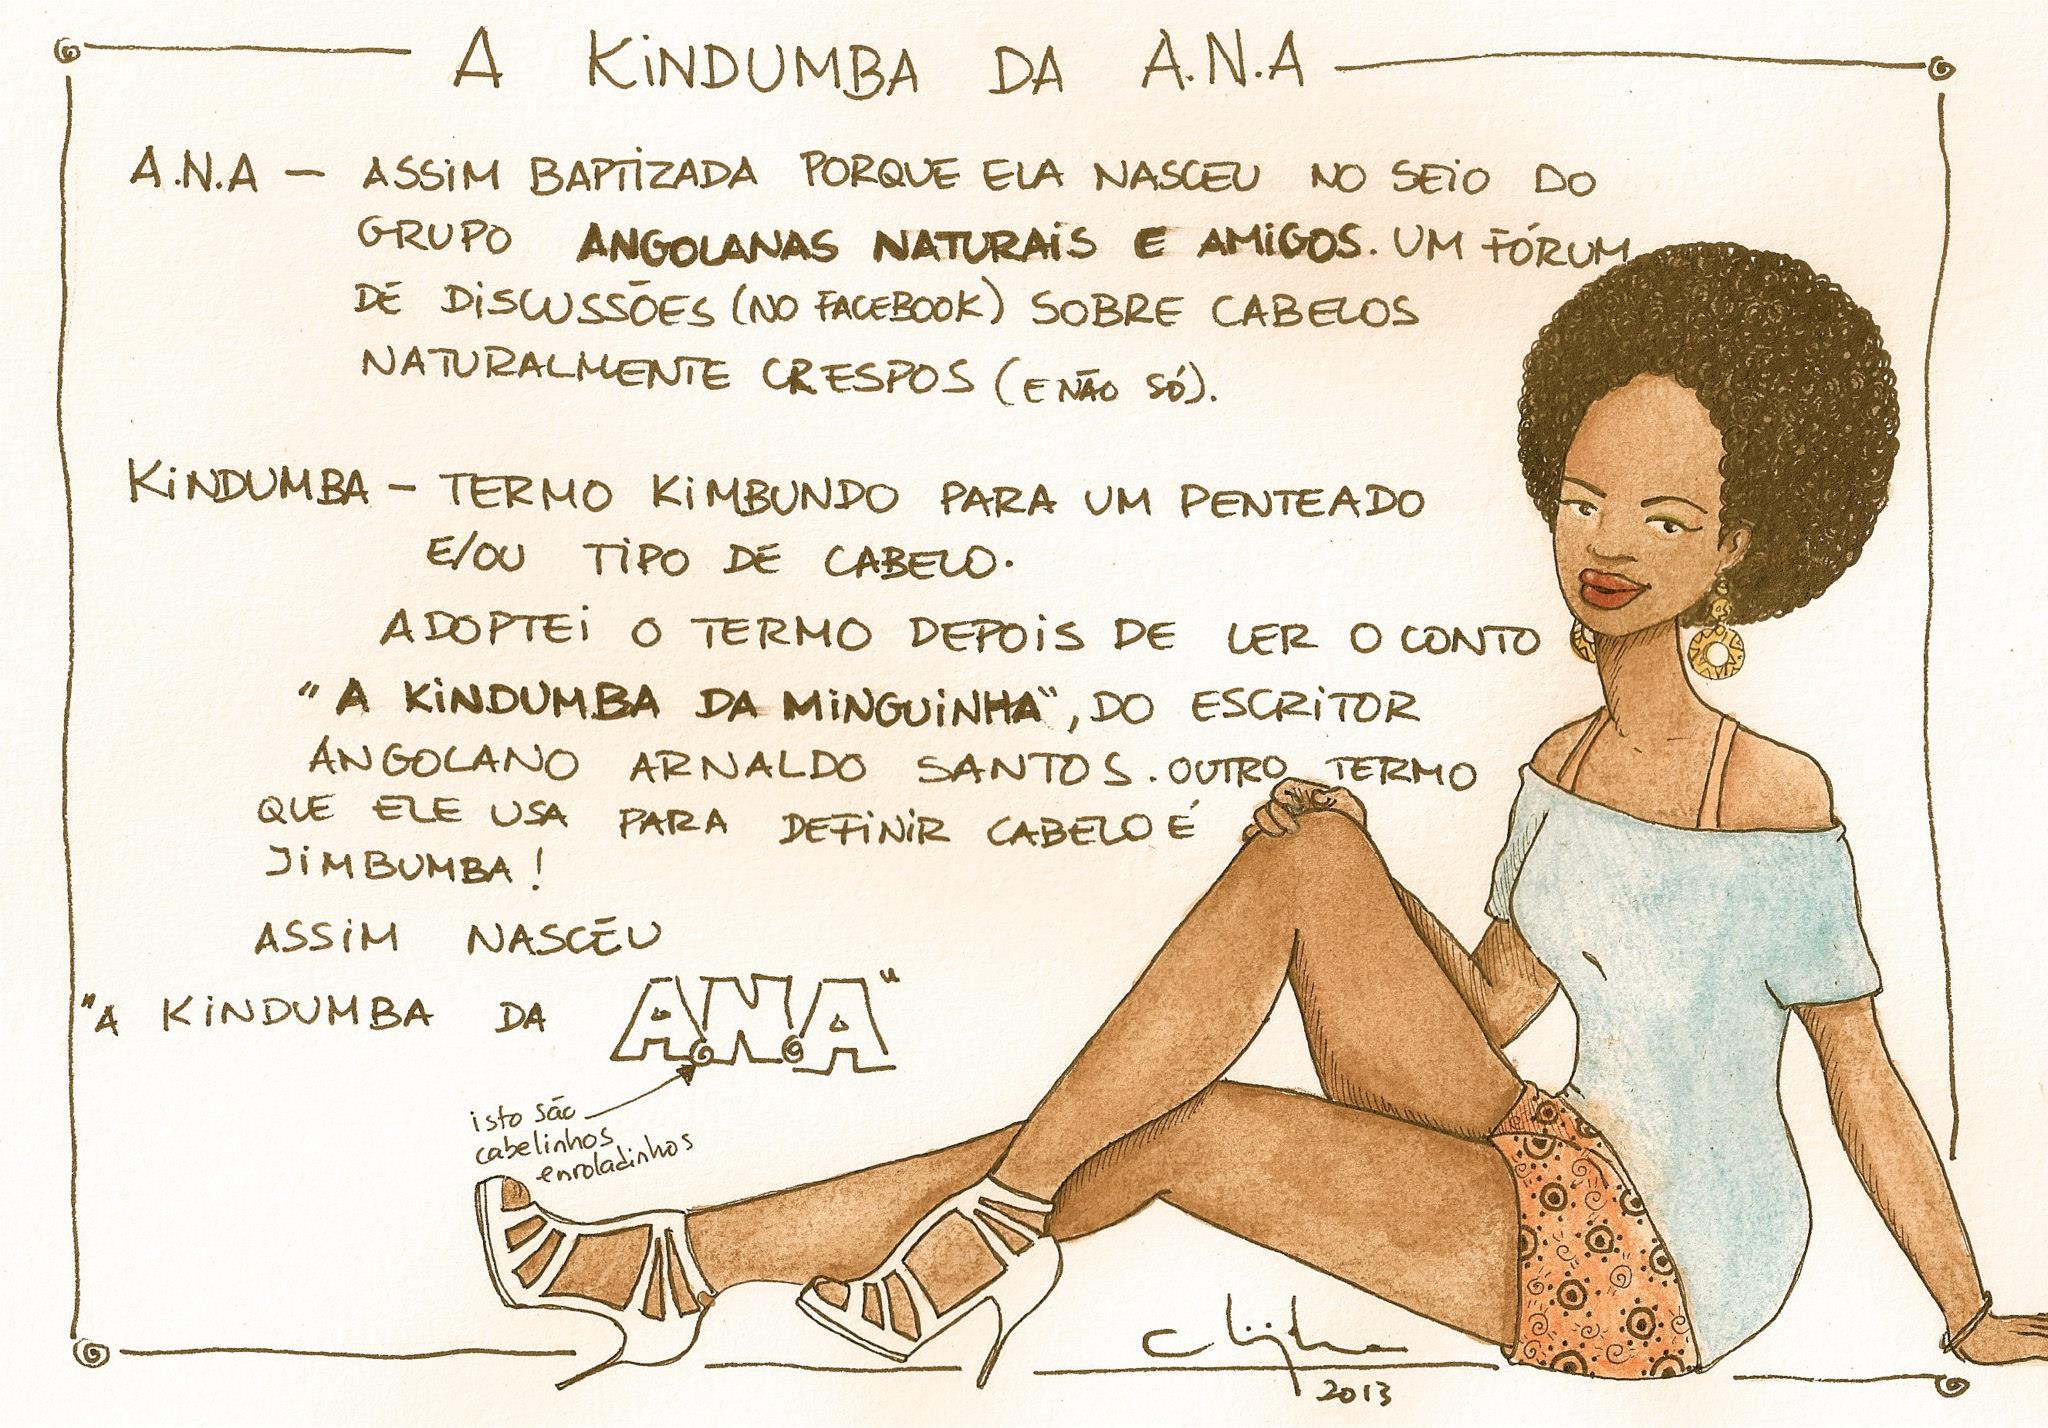 A Kindumba da A.N.A. (čita se ANA)   ANA- Krštena na ovaj način jer je rođena na grudima grupe Angolanas Naturais e Amigos, forum (na Facebook-u) oko diskusije o prirodno kovrdžavoj kosi (i ne samo to). Kindumba- Kimbundo je termin koji se koristi za stil frizure i/ili vrstu kose. Ovaj naziv sam usvojila kada sam pročitala priče  "A kindumba da minguinha", angolskog pisca Arnalda Santosa. Drugi naziv koji on koristi da definiše kosu je Jimbumba! Eto tako 